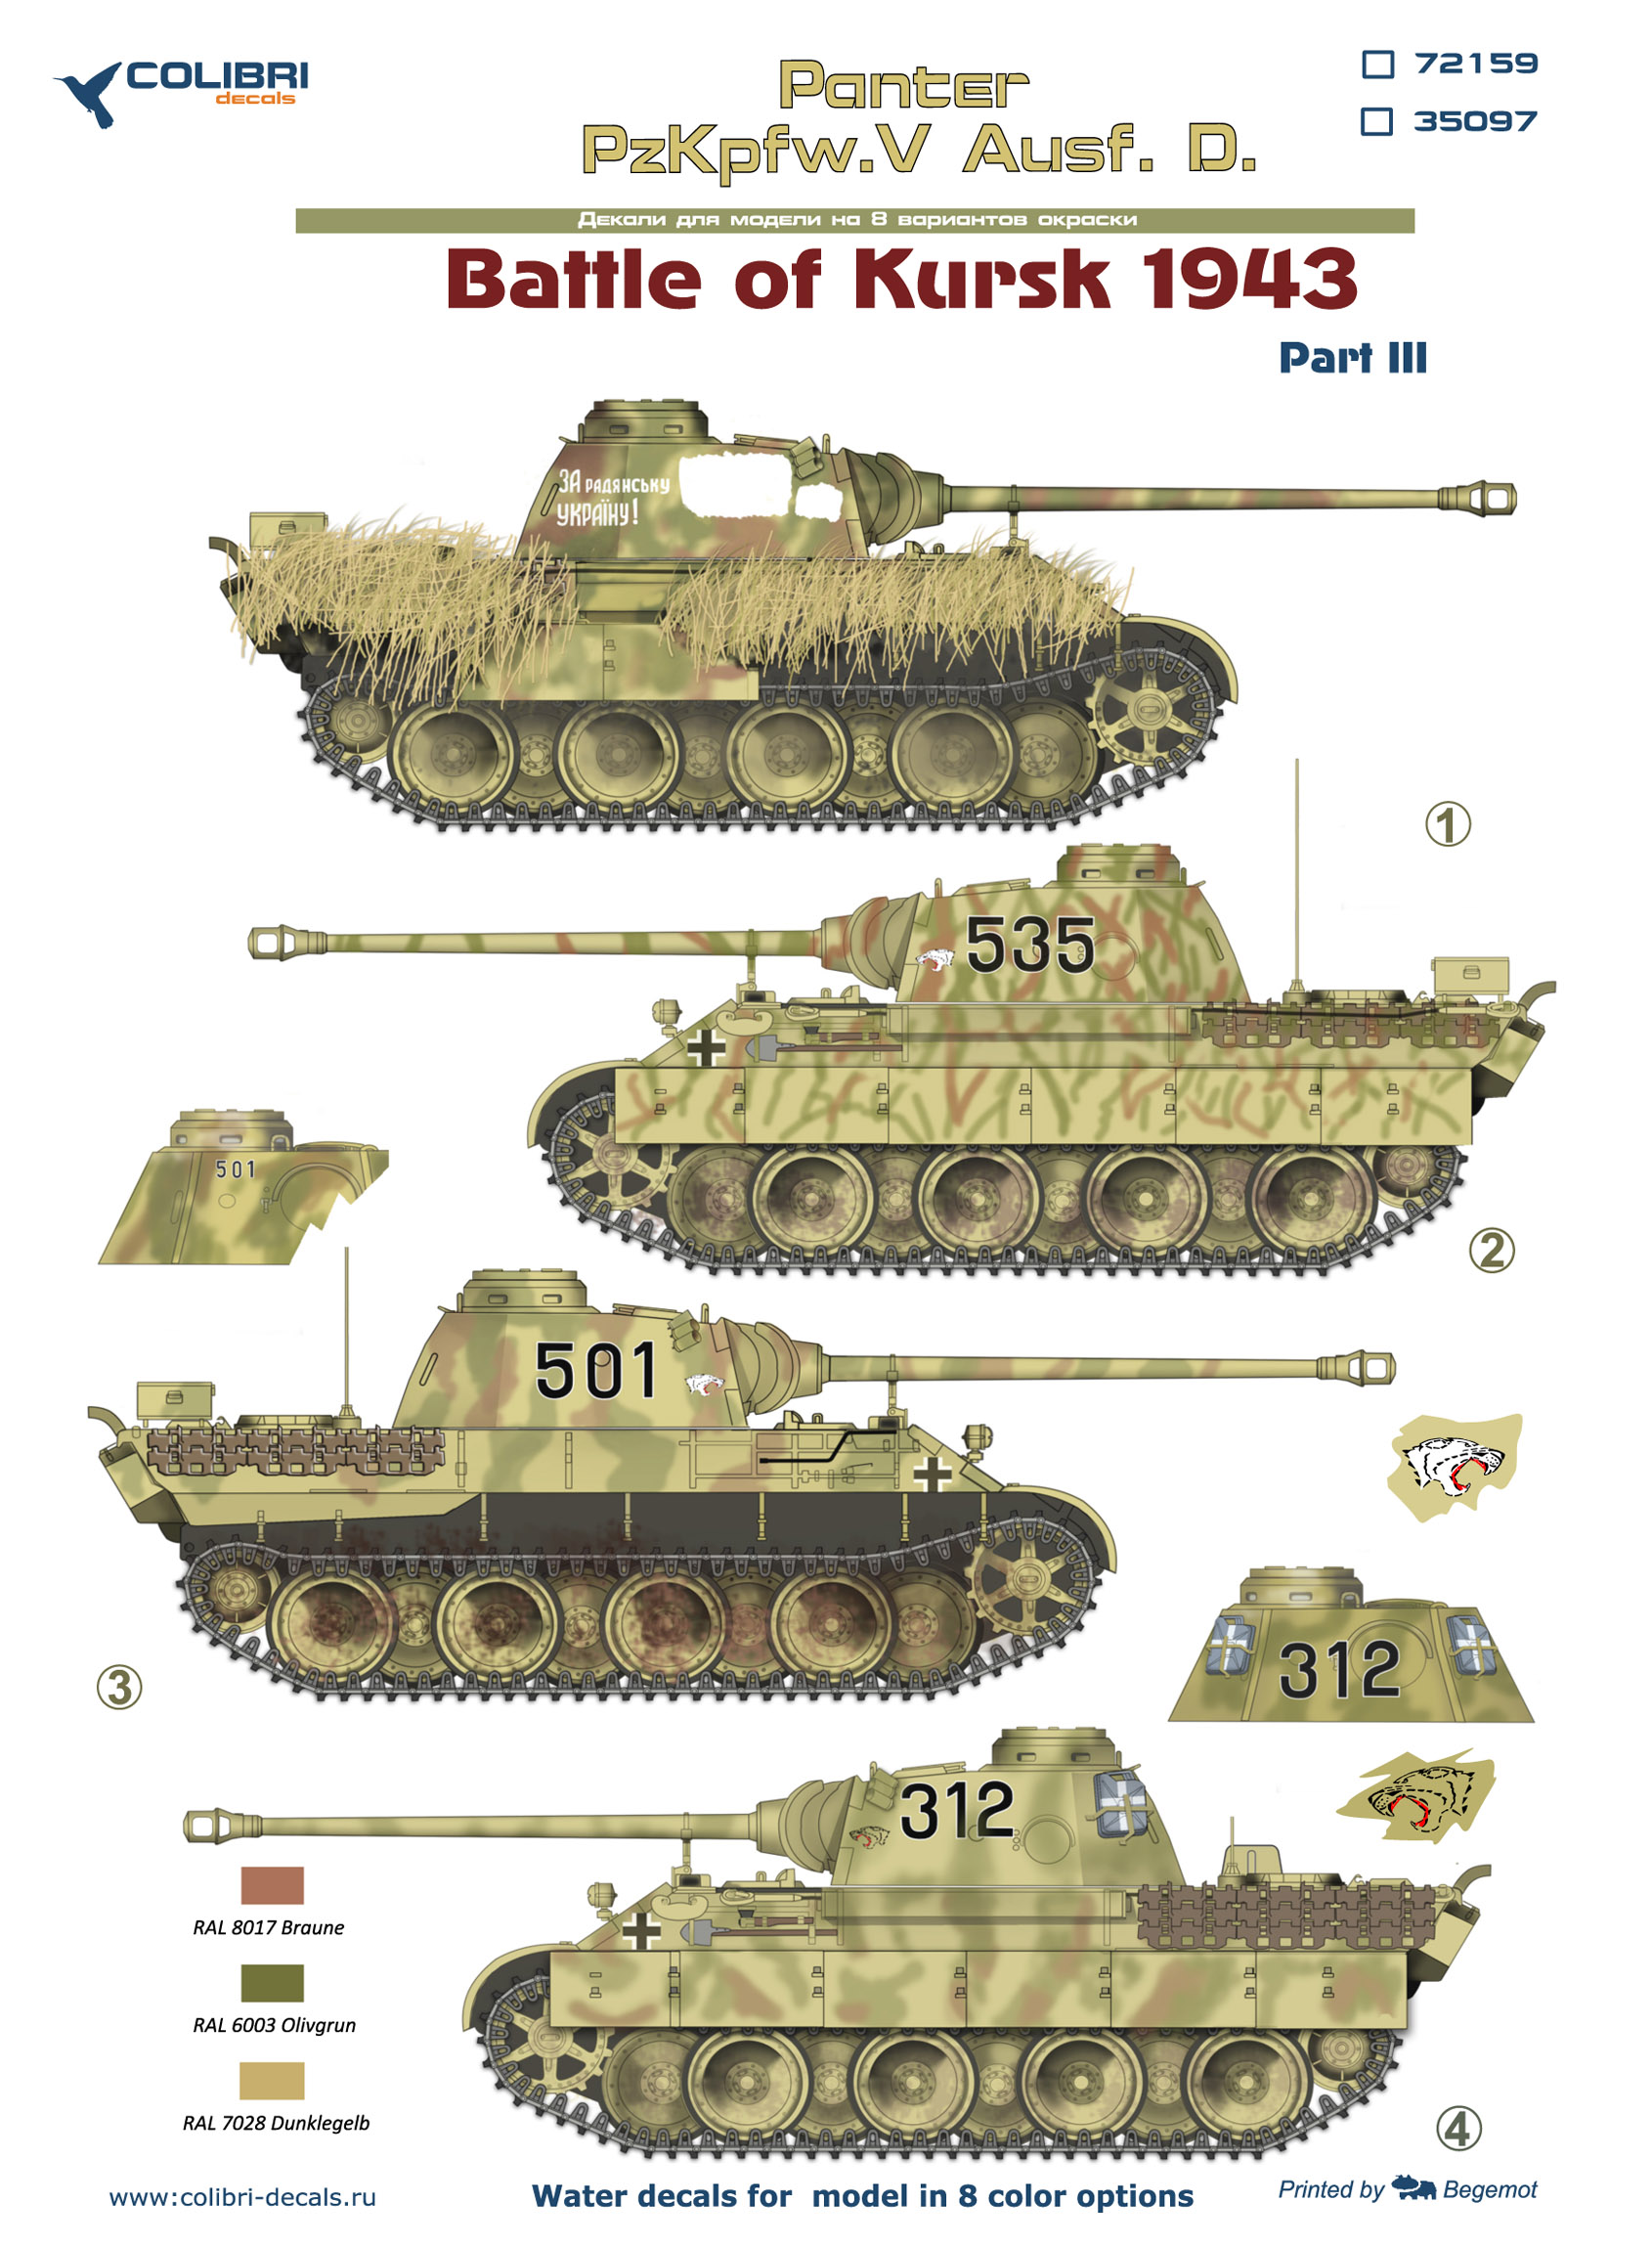 Декаль 1/35 Pz.Kpfw.V Panter Ausf. D Battle of Kursk1943 - Part III (Colibri Decals)